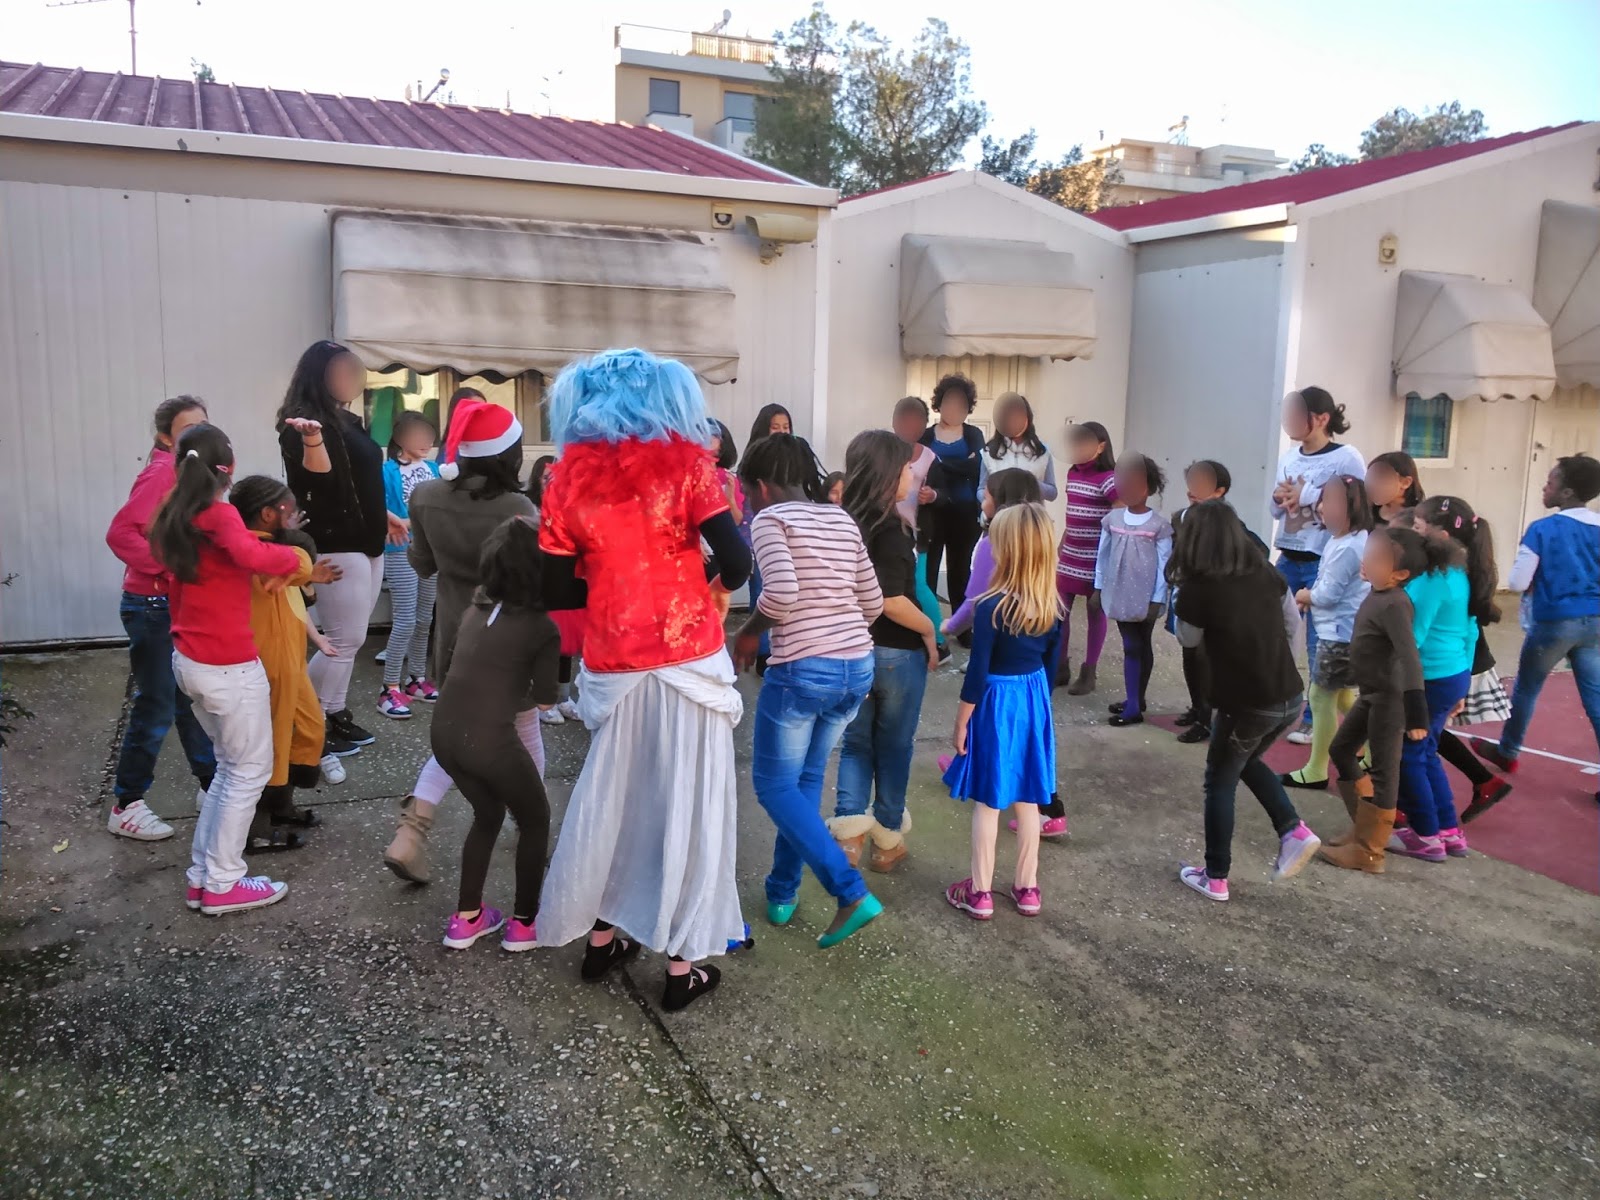 ΠΕΑΛΣ: ΕΝΗΜΕΡΩΣΗ Παιδική γιορτή στο Χατζηκυριάκειο ίδρυμα - Φωτογραφία 17